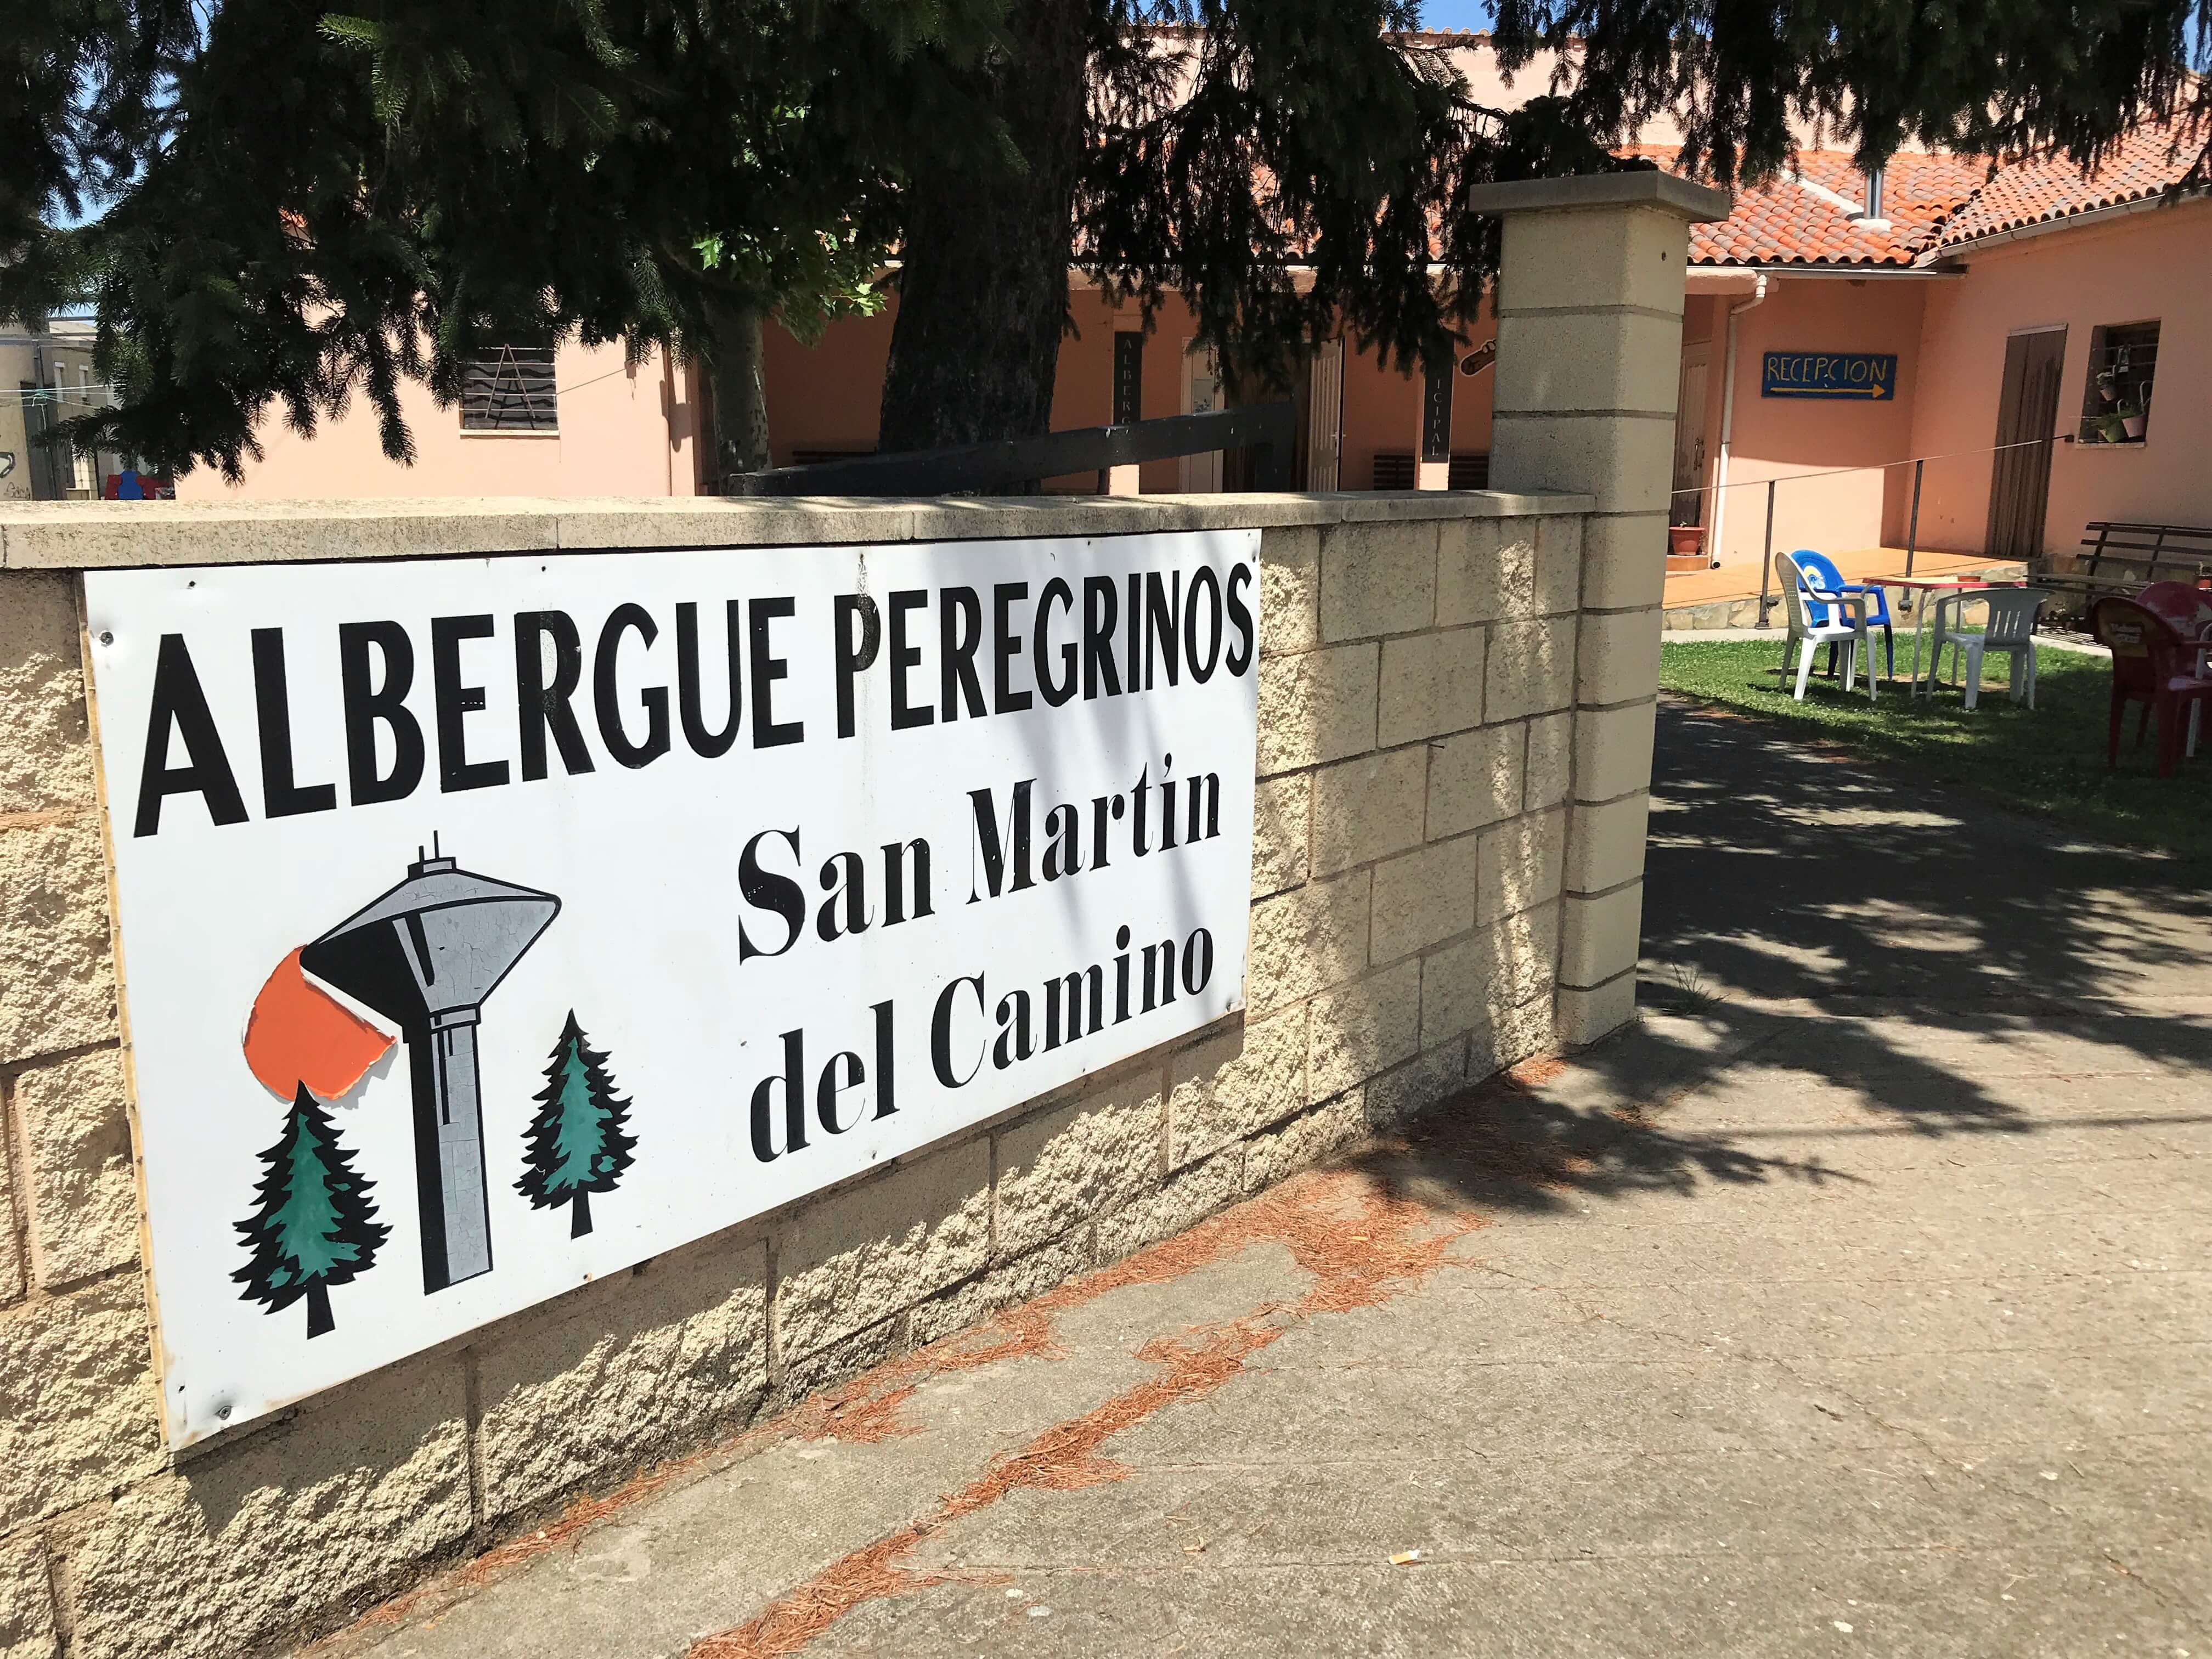  San Martín del Camino